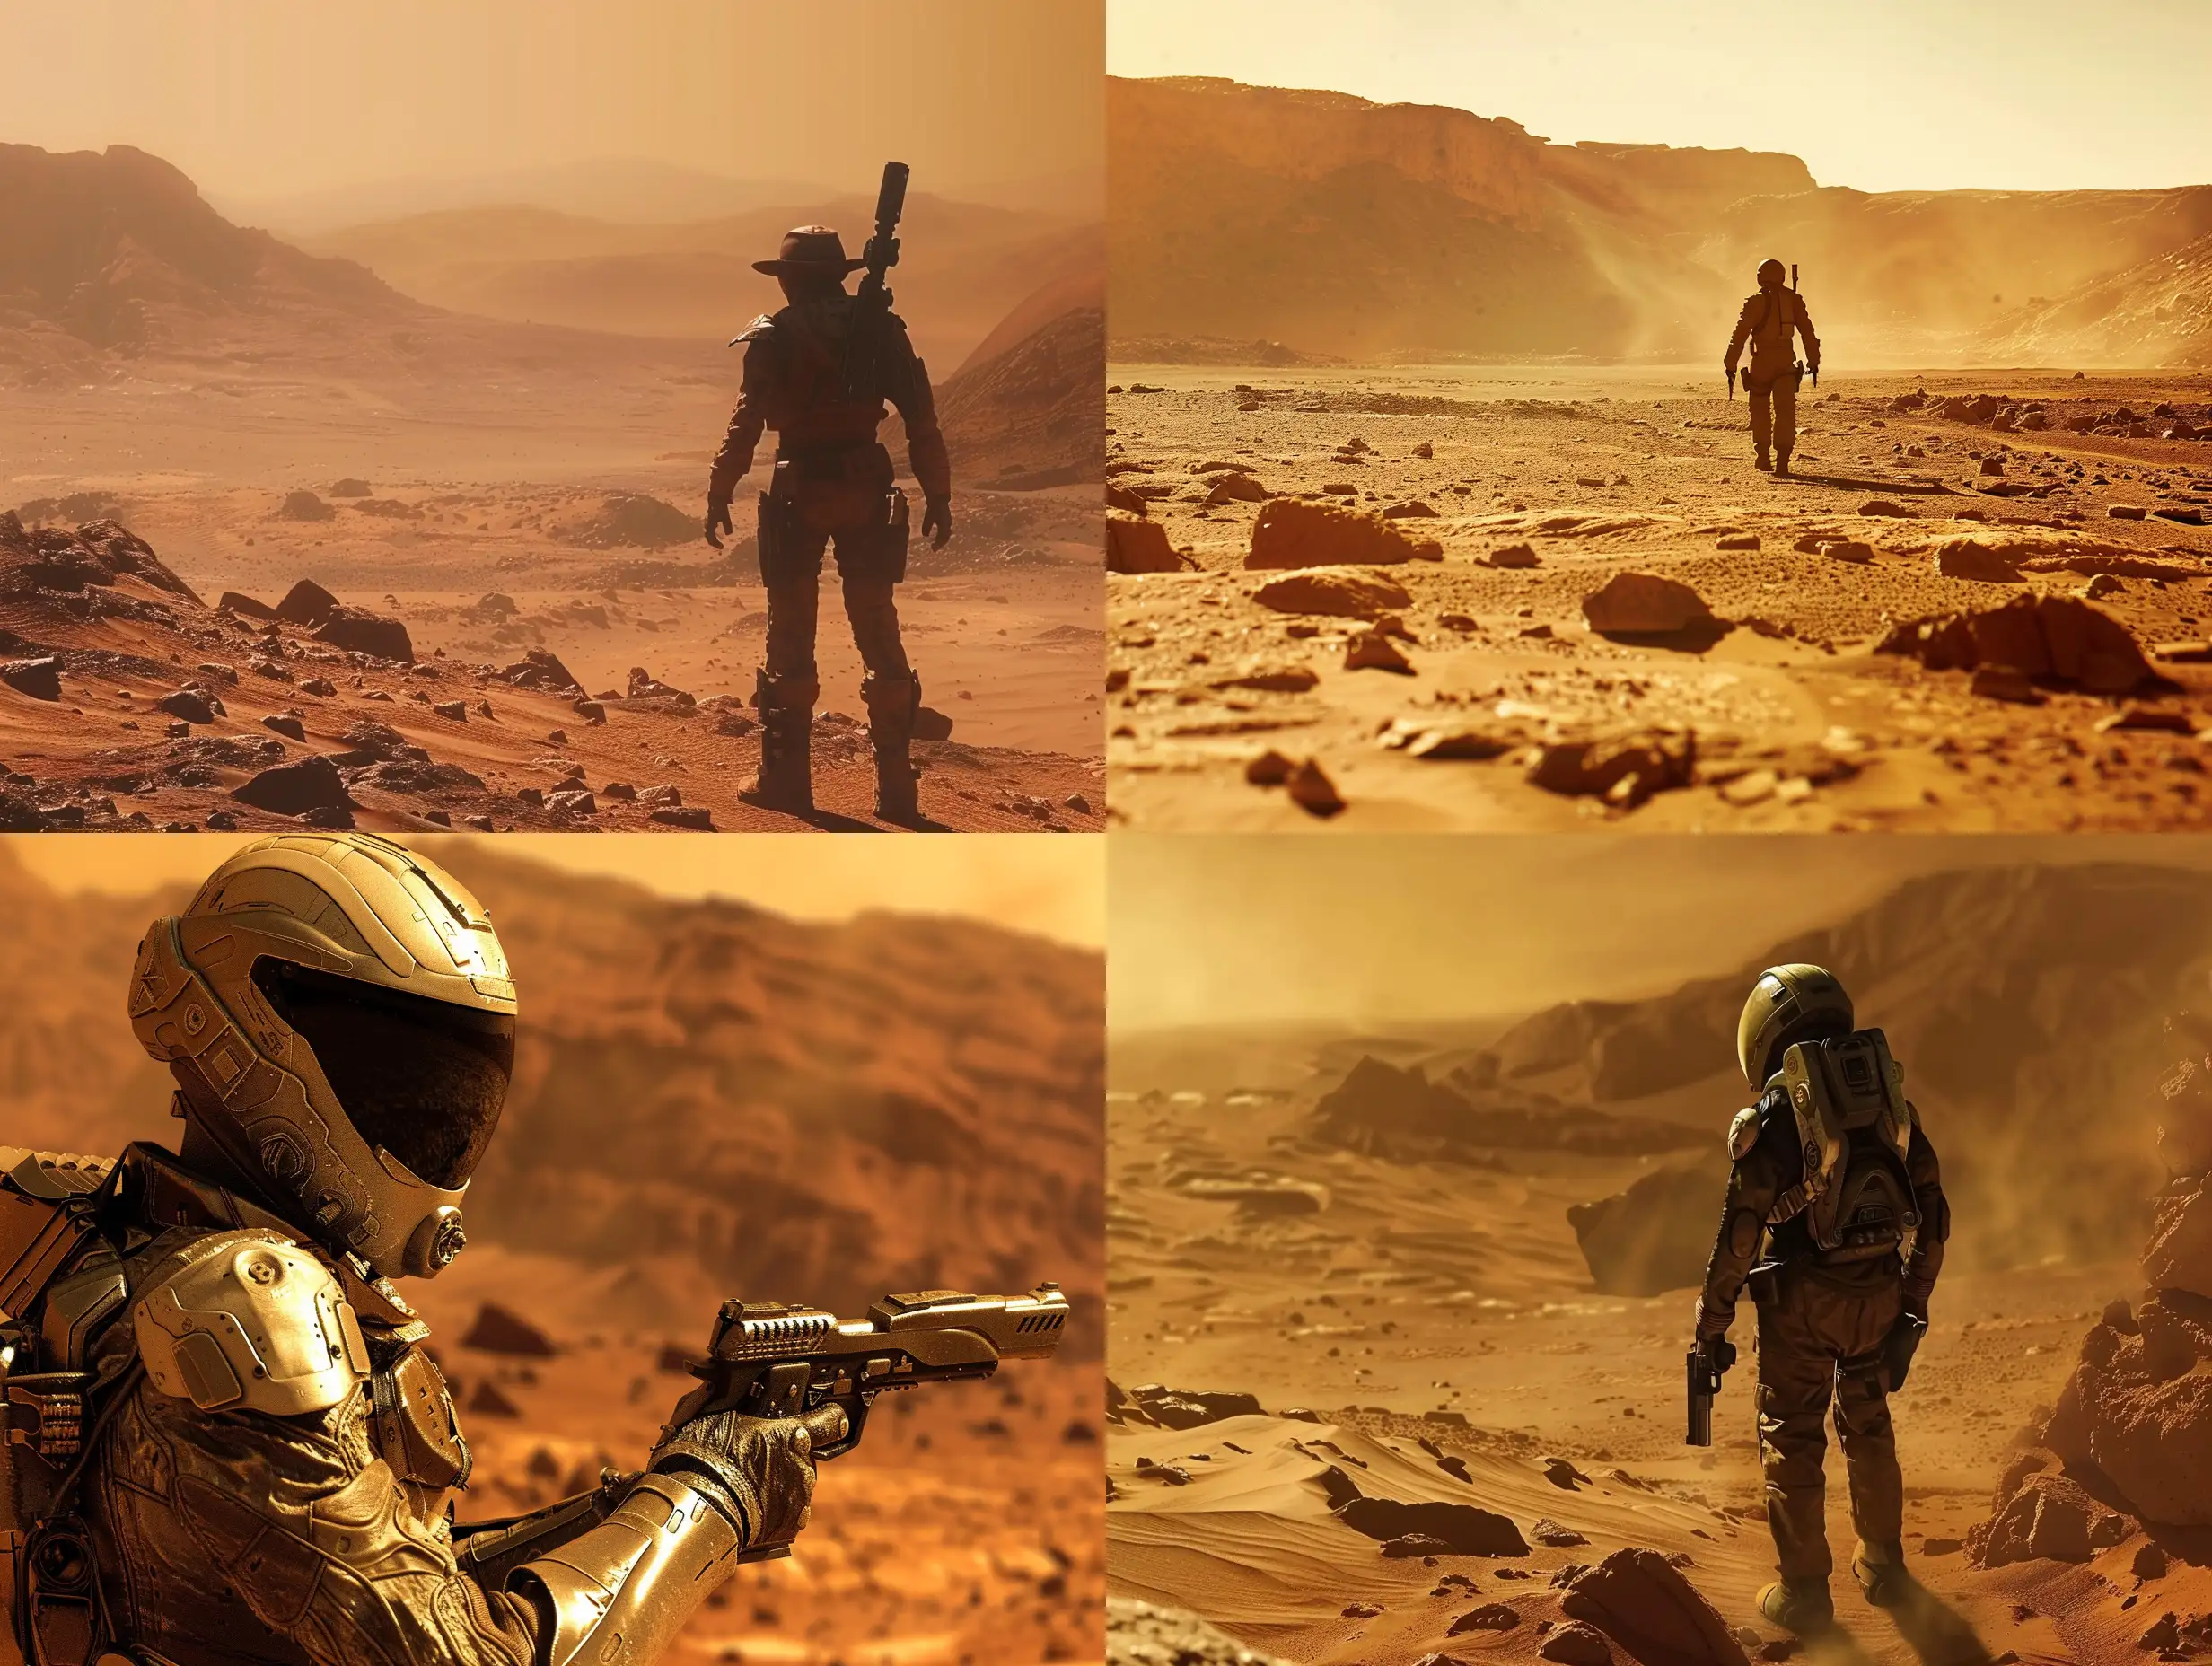 Lone-Martian-Gunslinger-in-a-Futuristic-Wasteland